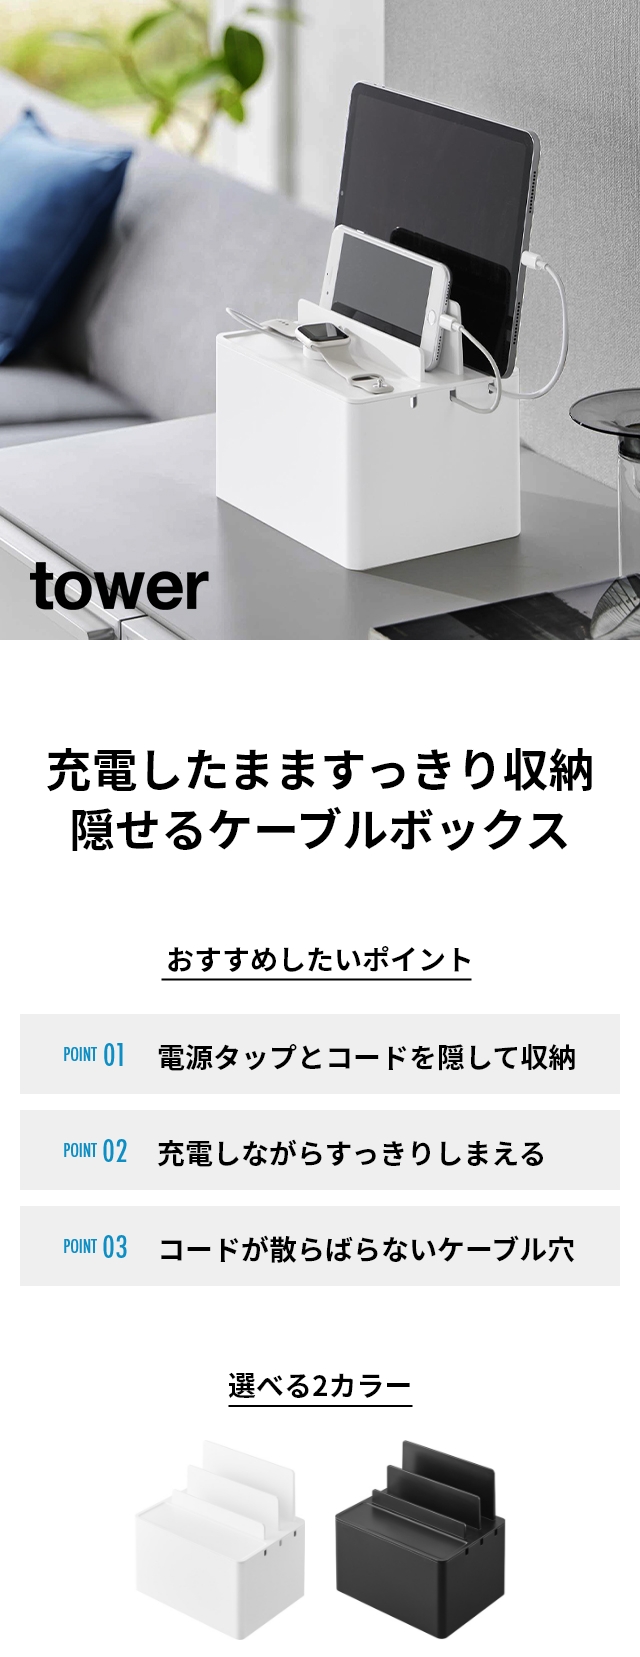 tower (タワー) 充電ステーション